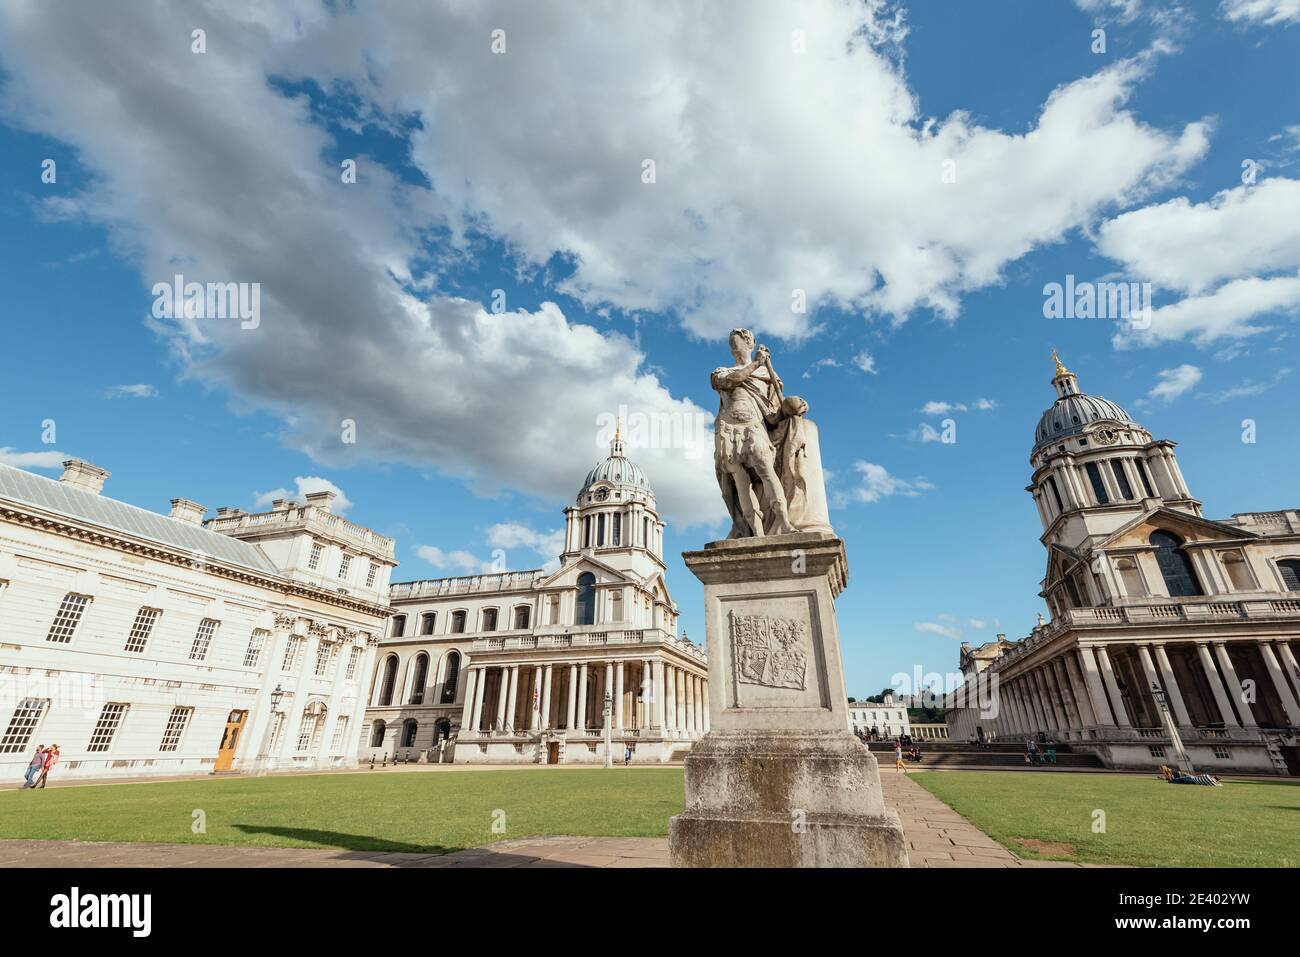 Une statue du roi George II se trouve dans l'Old Royal Naval College, Greenwich, Londres, Angleterre, Royaume-Uni Banque D'Images